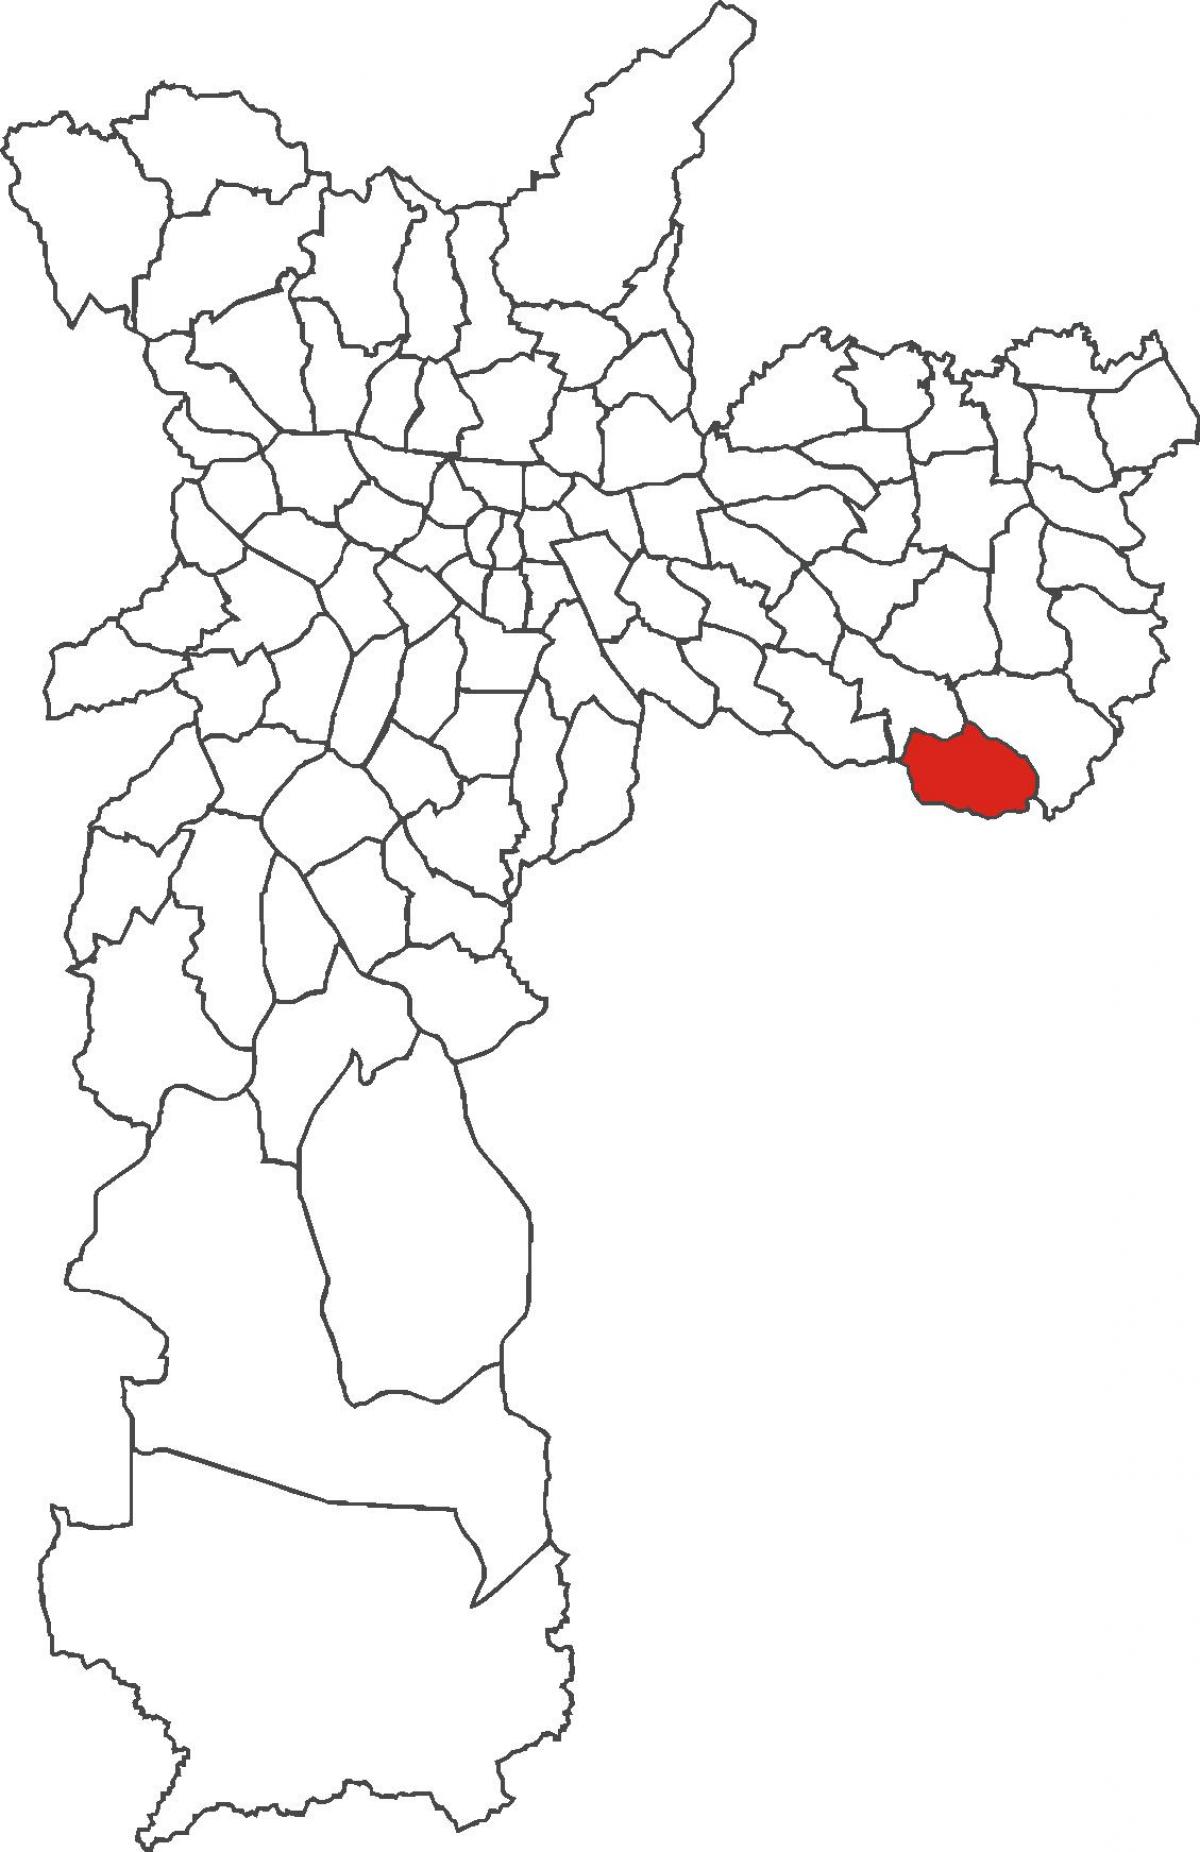 মানচিত্র São Rafael জেলা